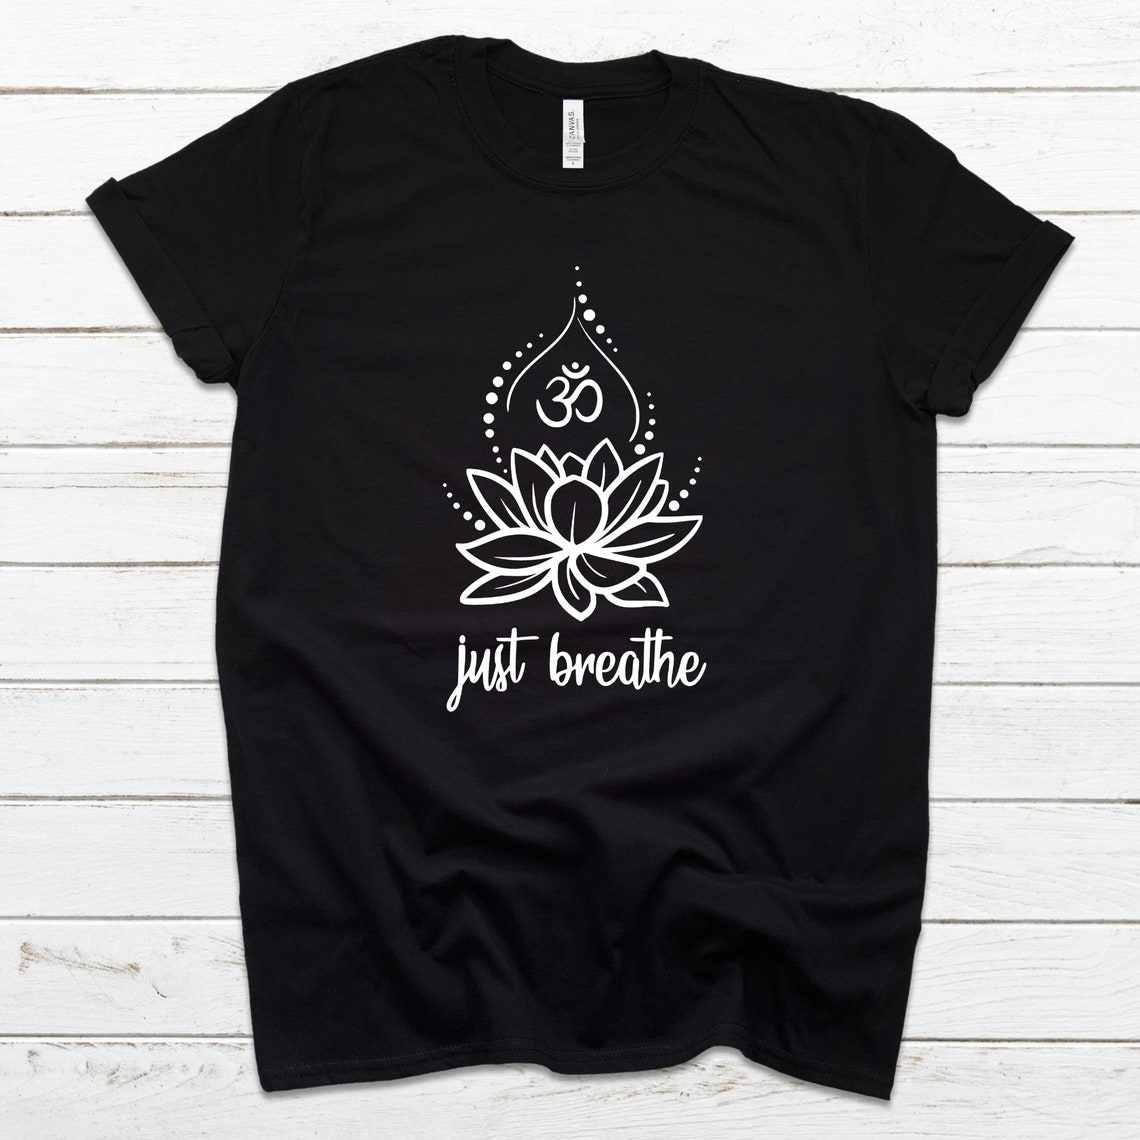 Meditation tshirt women Spiritual shirts for women Yoga | Etsy